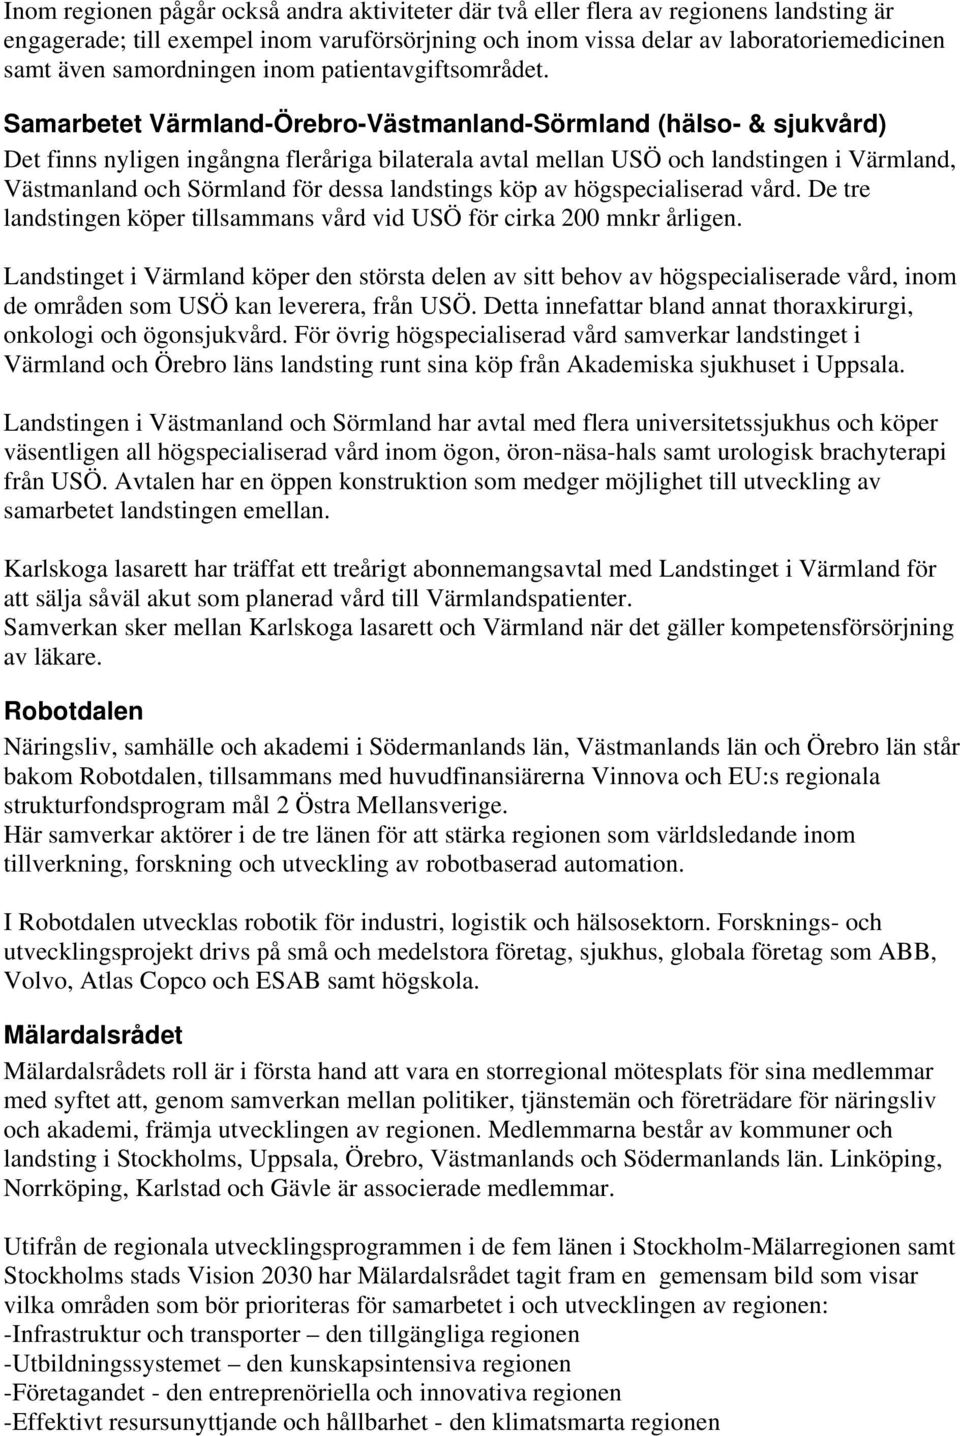 Samarbetet Värmland-Örebro-Västmanland-Sörmland (hälso- & sjukvård) Det finns nyligen ingångna fleråriga bilaterala avtal mellan USÖ och landstingen i Värmland, Västmanland och Sörmland för dessa